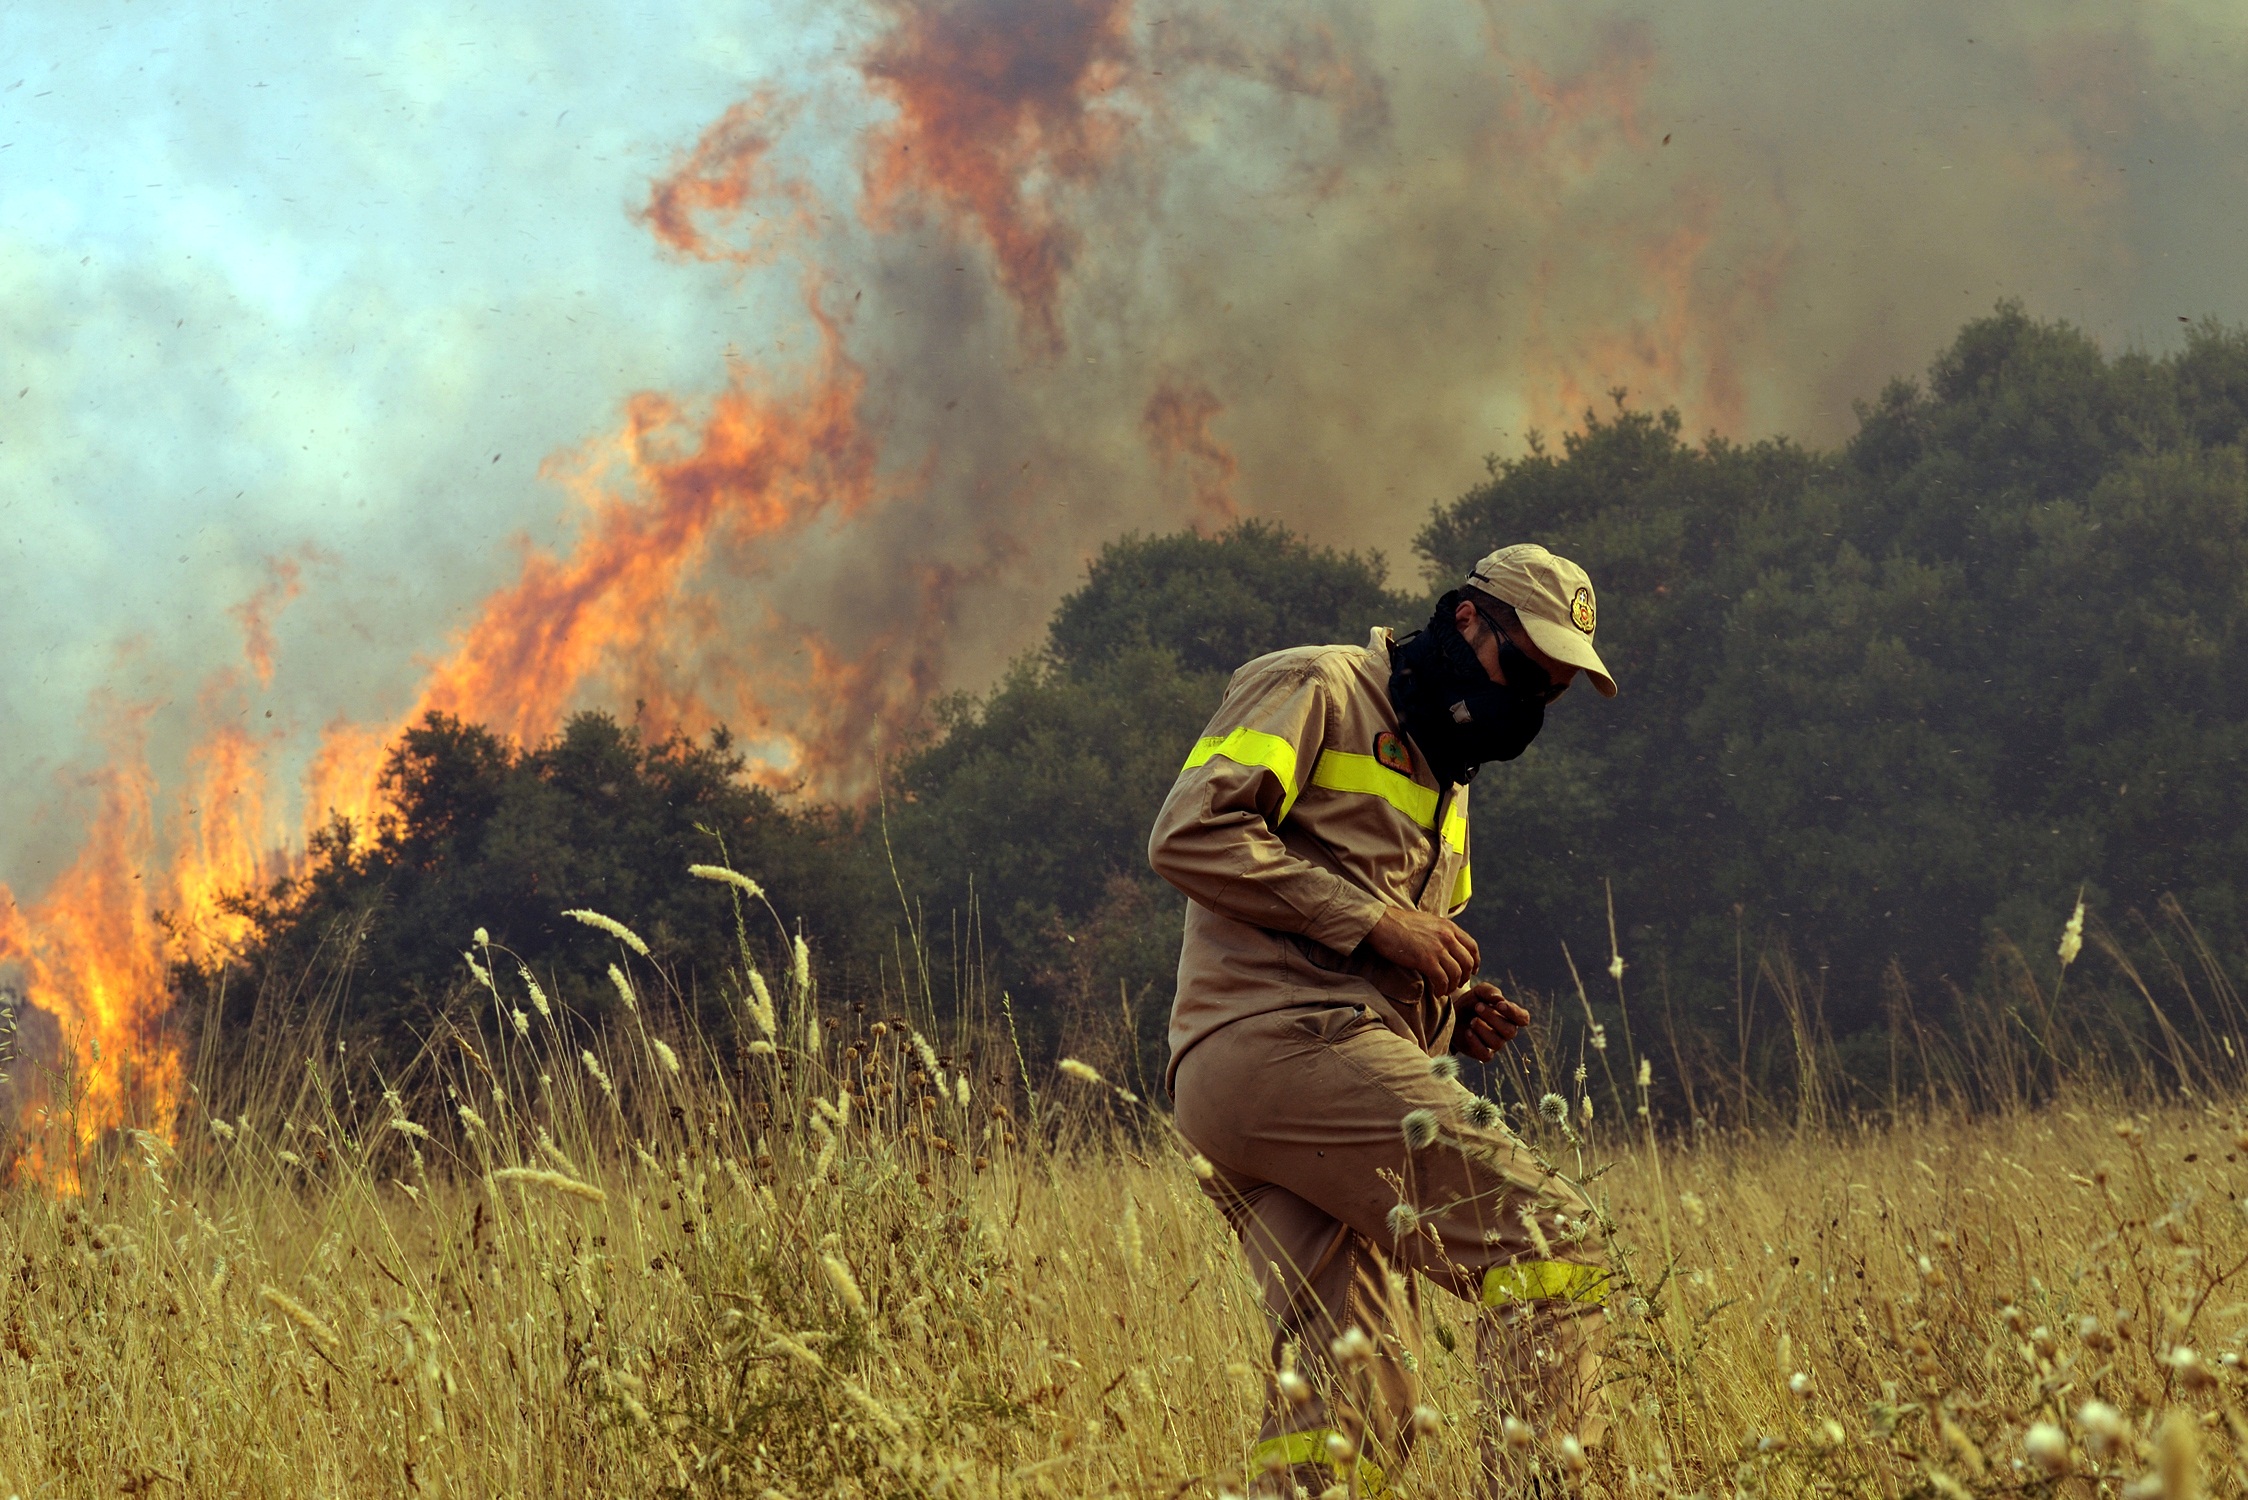 Οι φλόγες ''καταπίνουν'' τα πάντα στο πέρασμά τους - ΦΩΤΟ EUROKINISSI